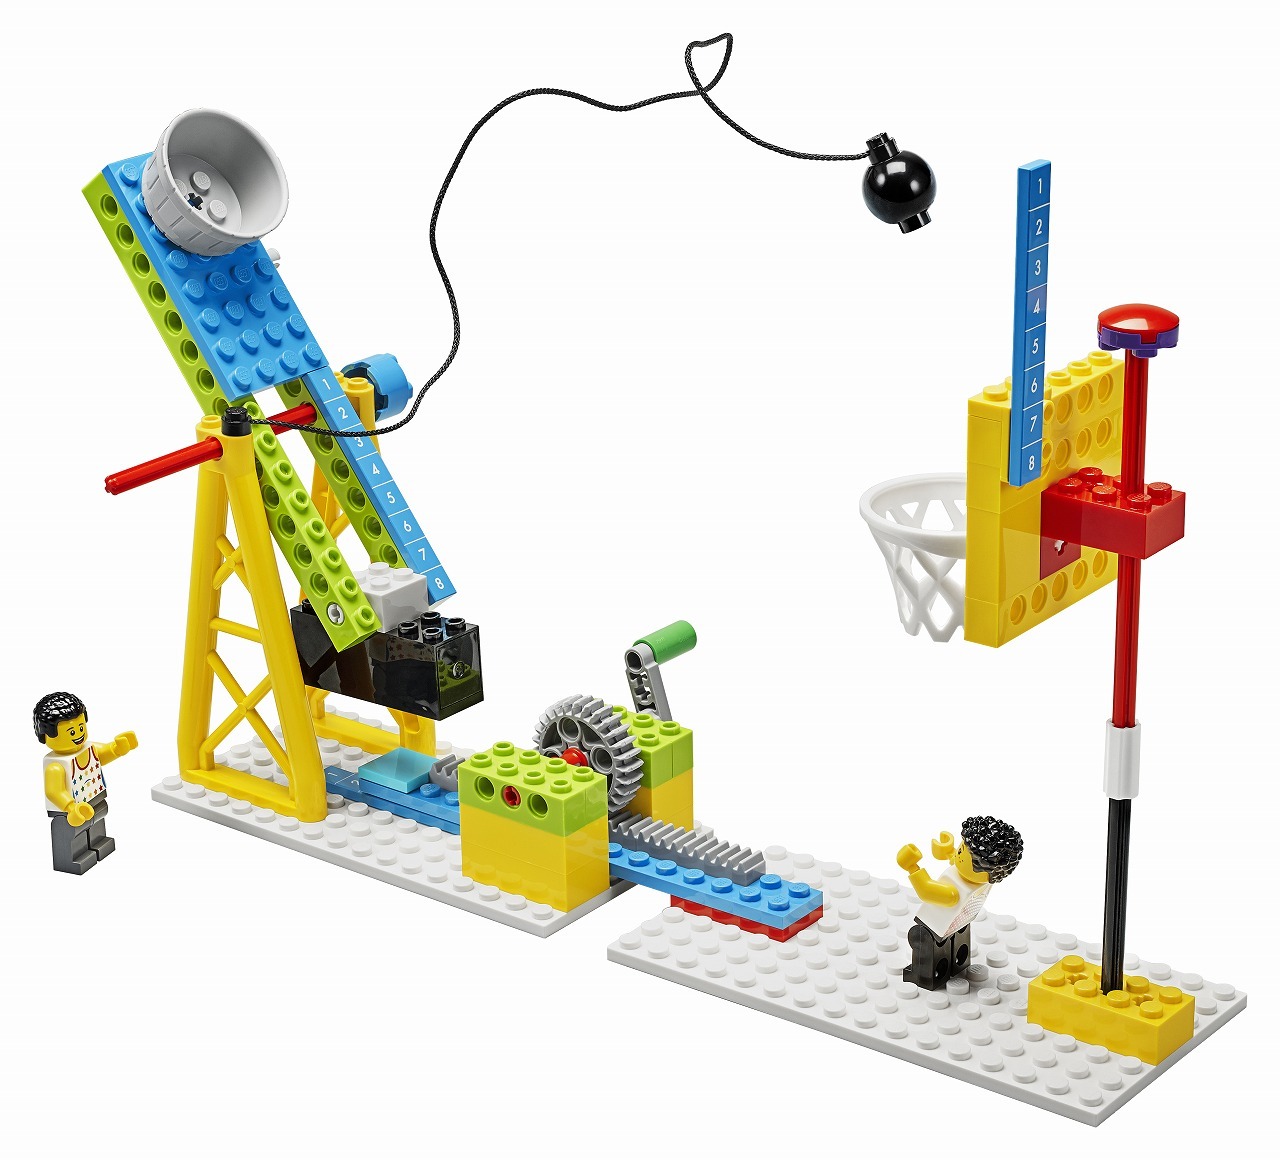 LEGO エデュケーションワールドサイエンス 9686 レゴスクール教材-